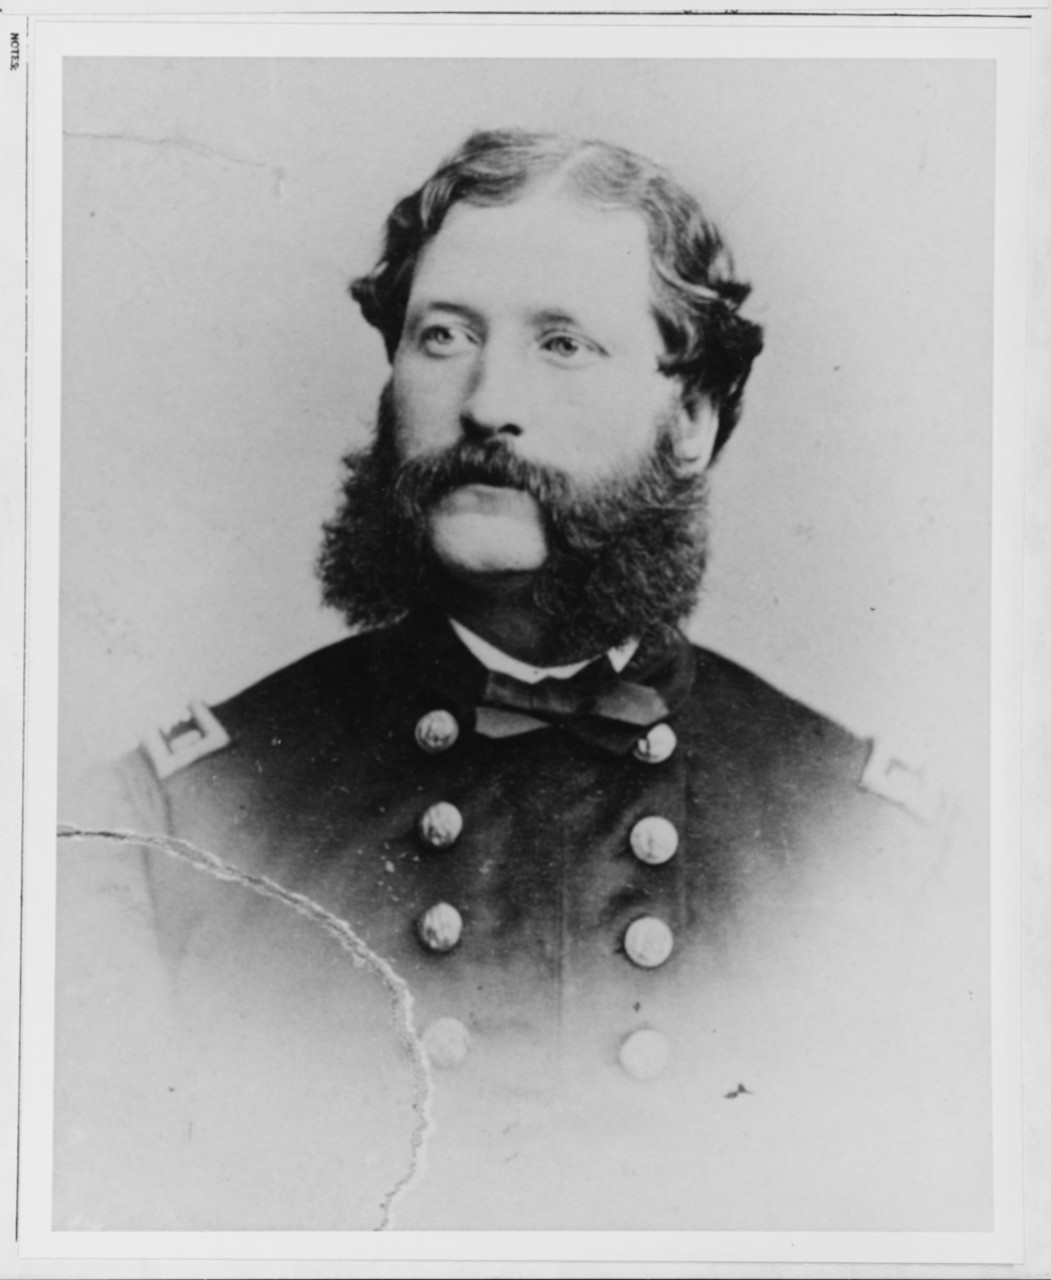 Josiah H. Benton, USN